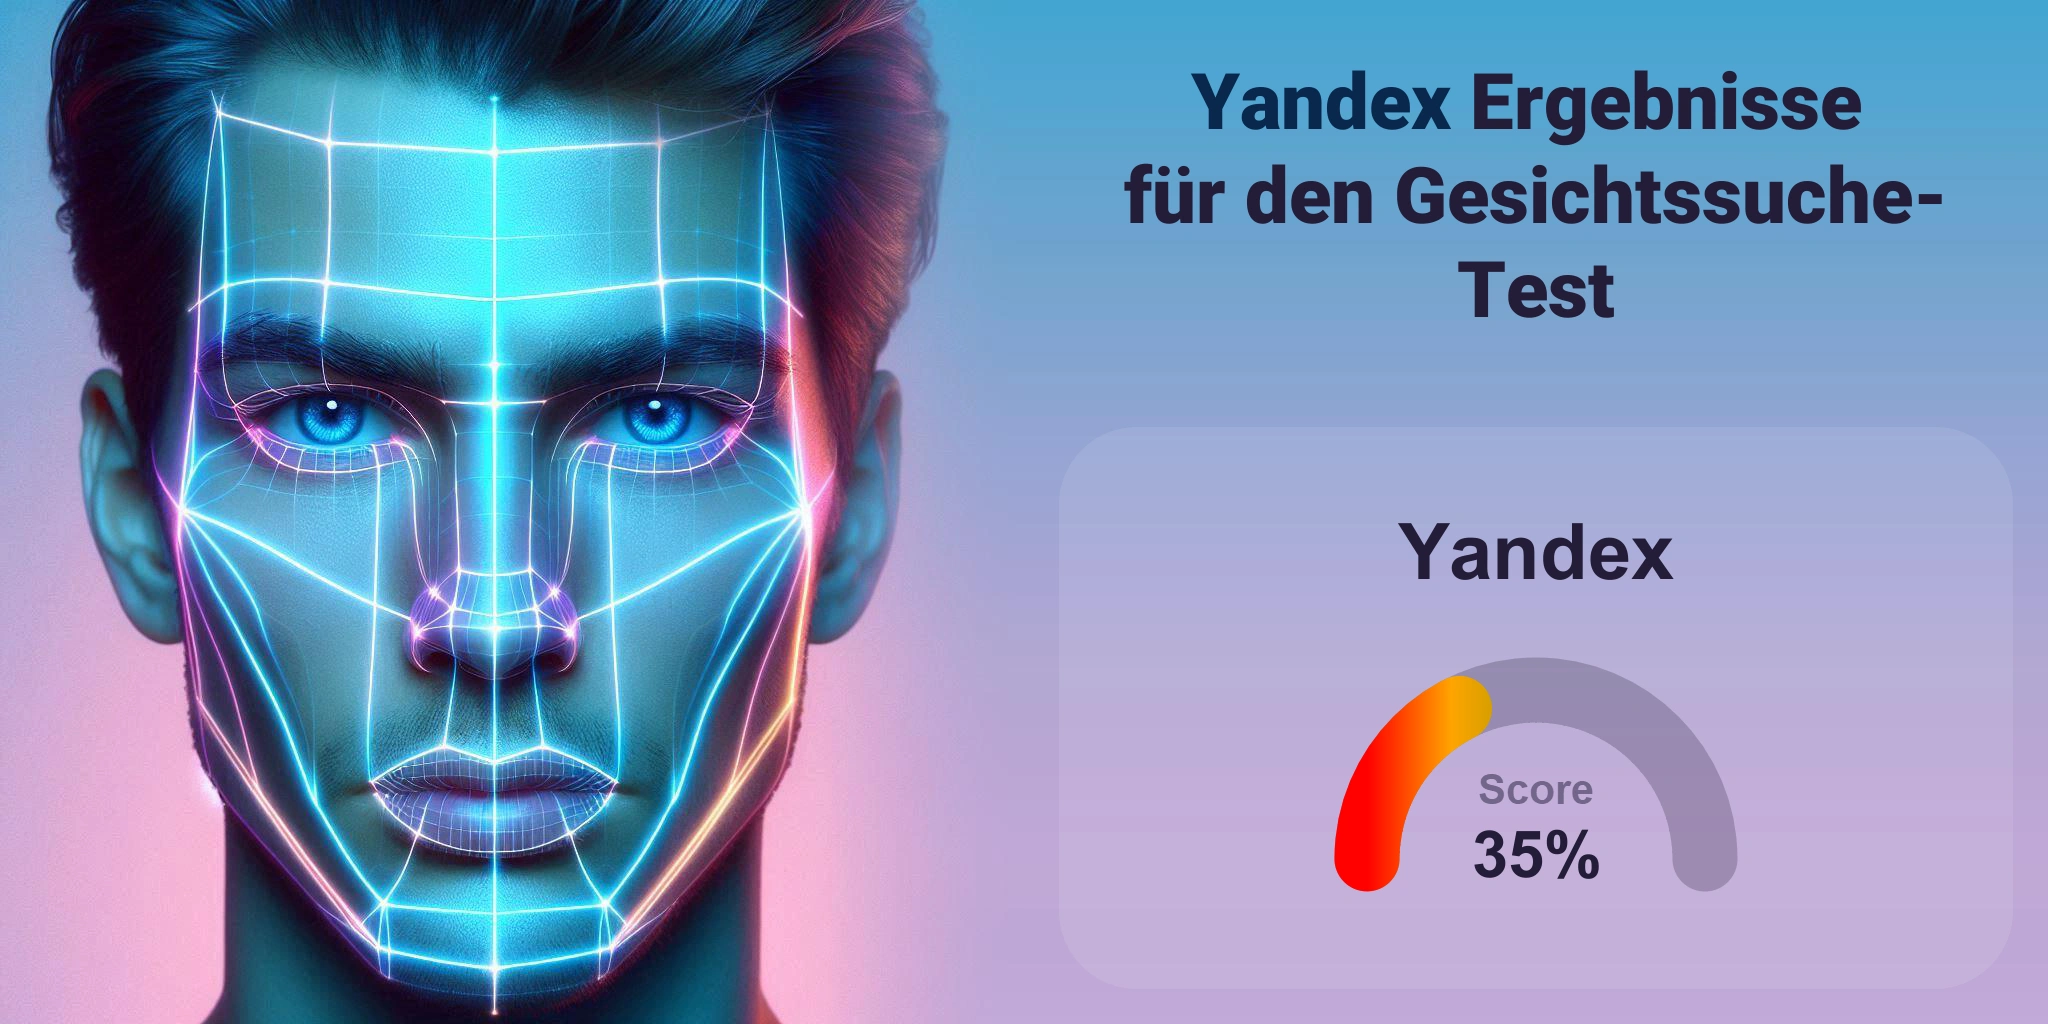 Ist Yandex der Beste für die Gesichtssuche?